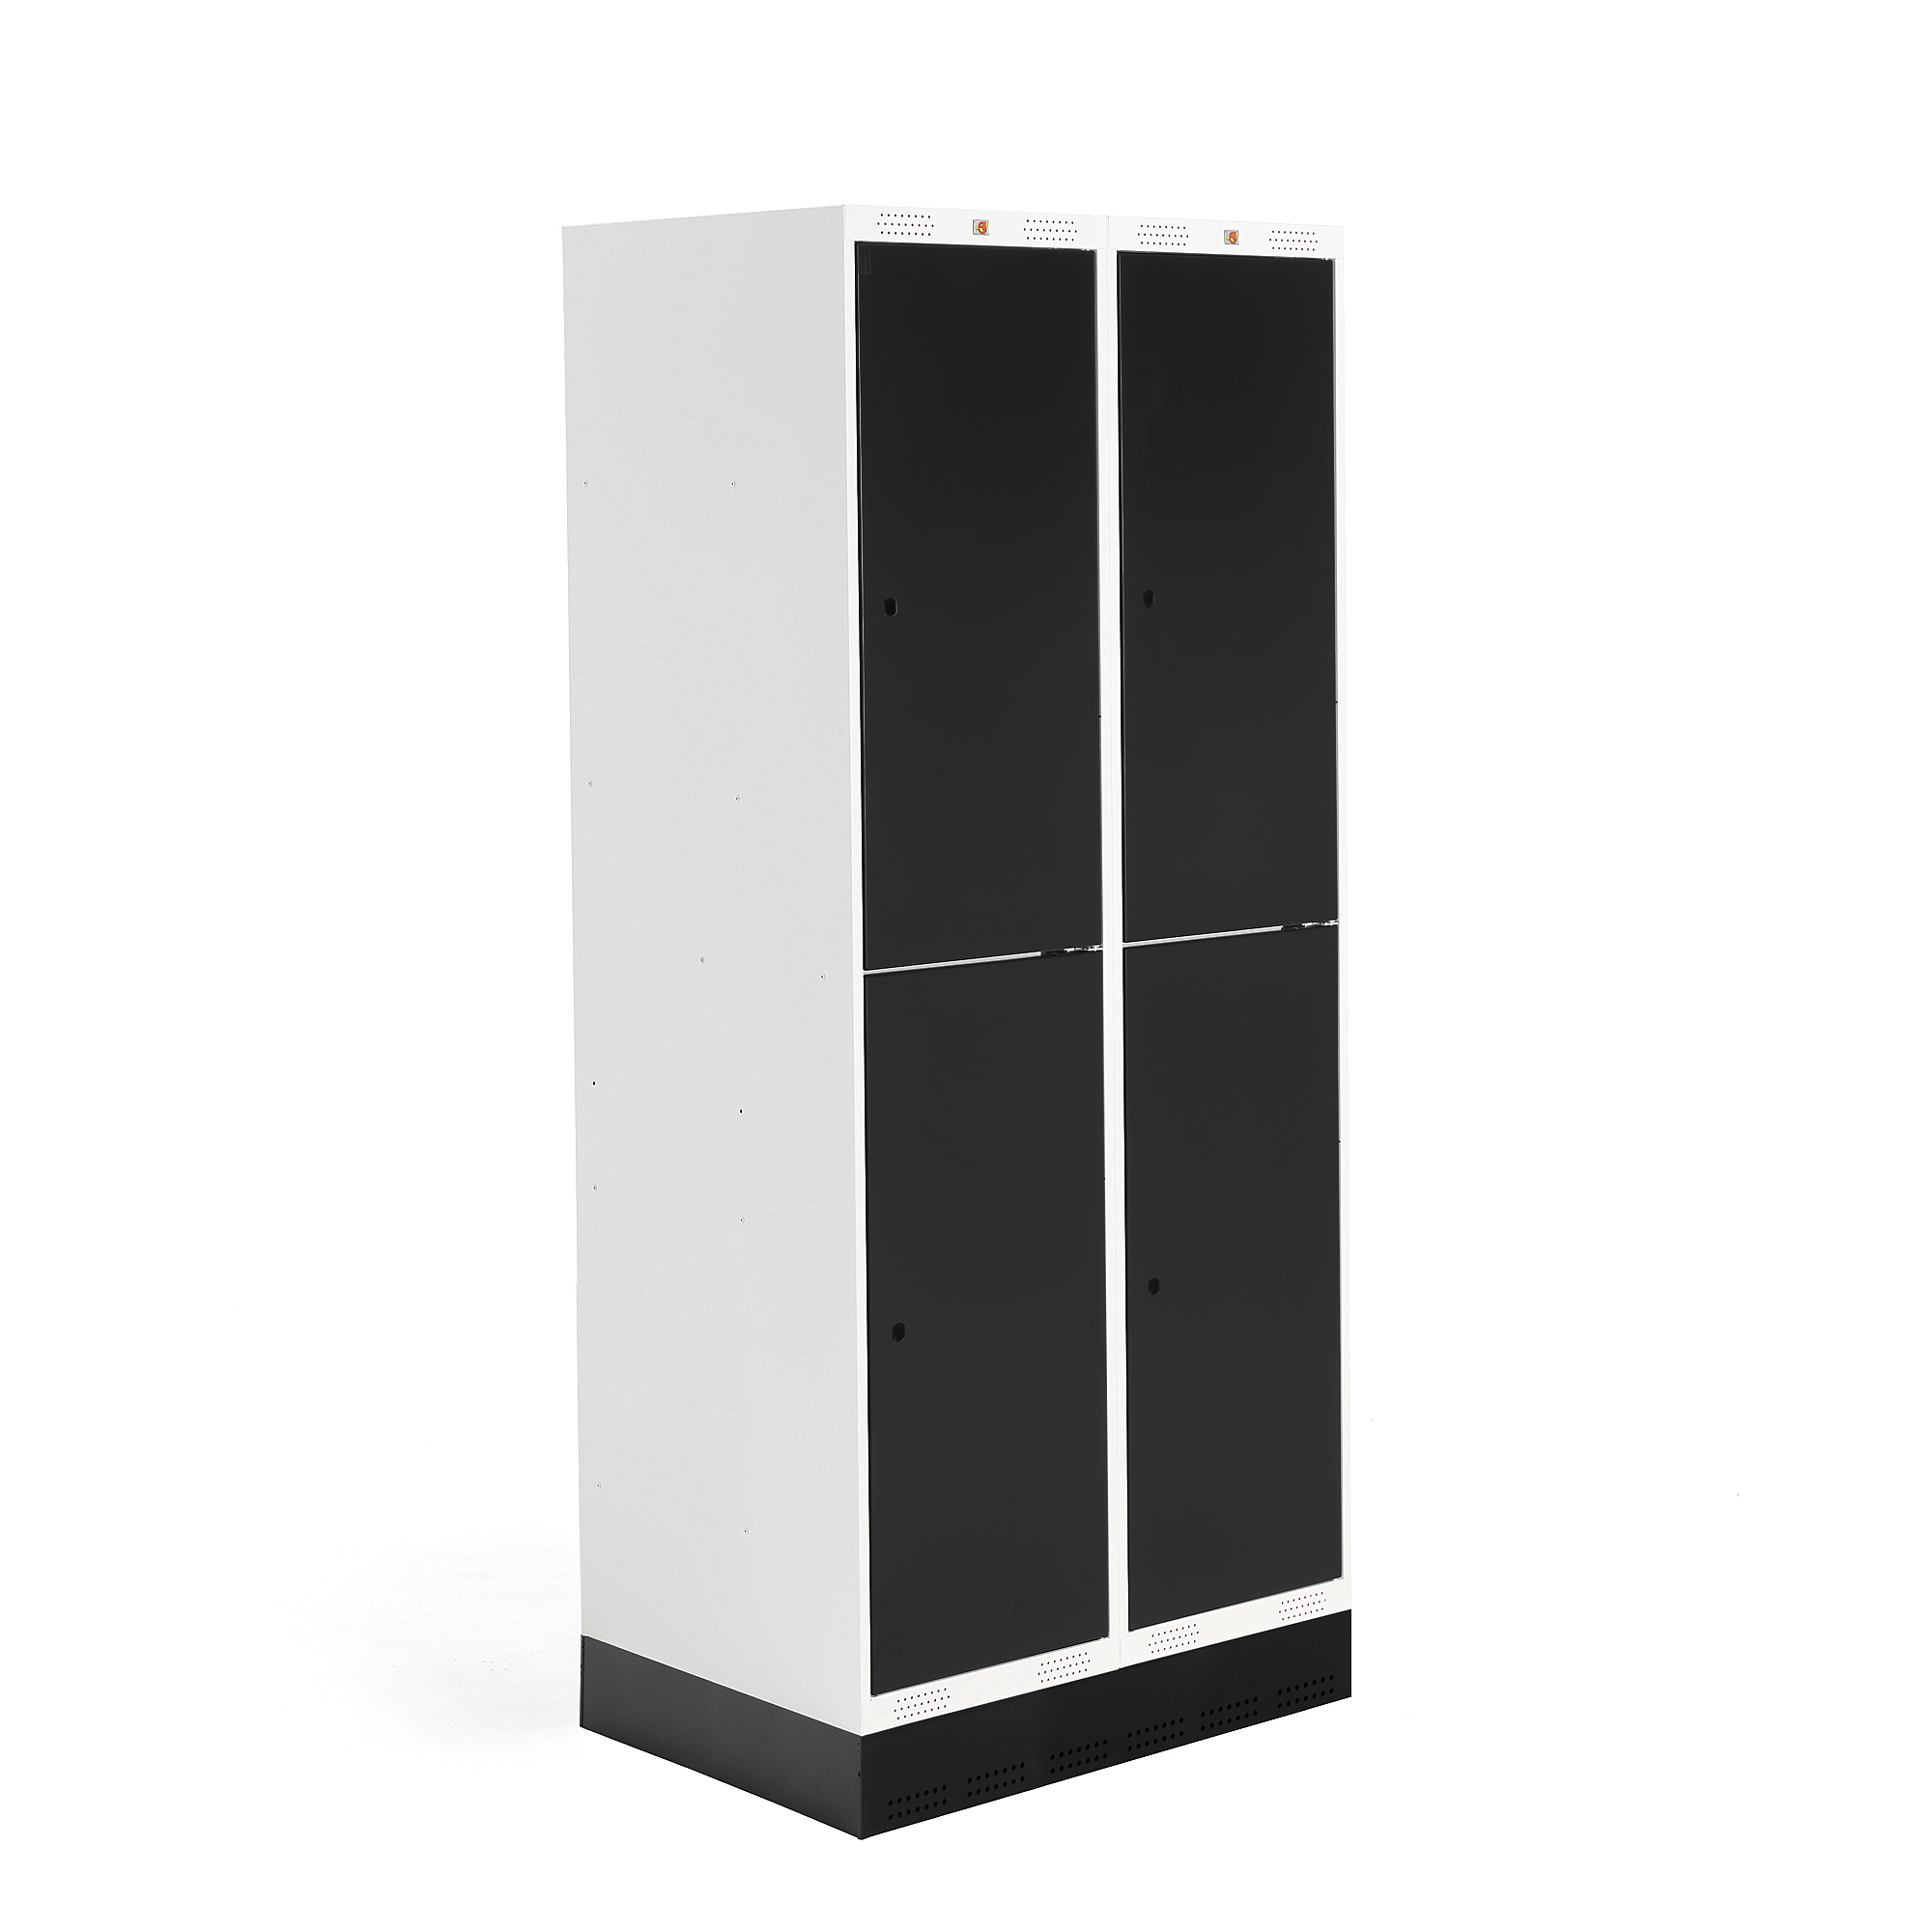 E-shop Školská šatňová skrinka ROZ, 2 sekcie, 4 dvere, 1890x800x550 mm, čierna, so soklom